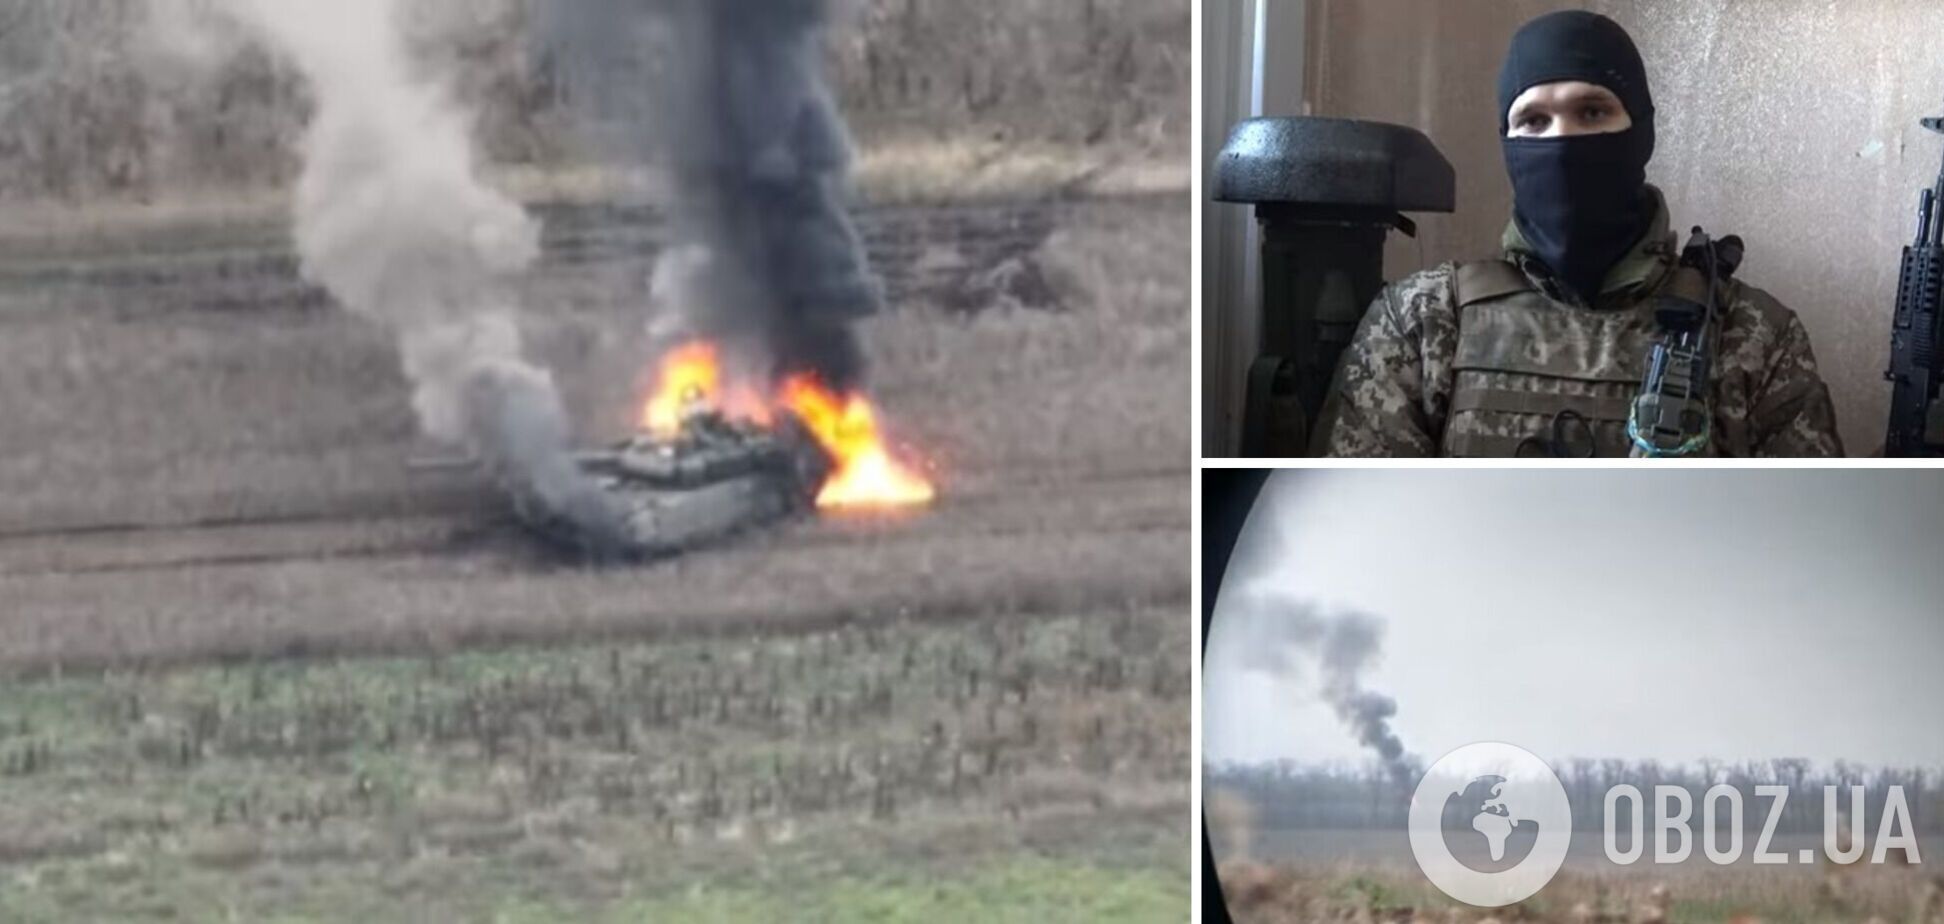 'Корпус танка просто разлетелся на молекулы': украинский защитник рассказал, как жег вражескую технику. Видео